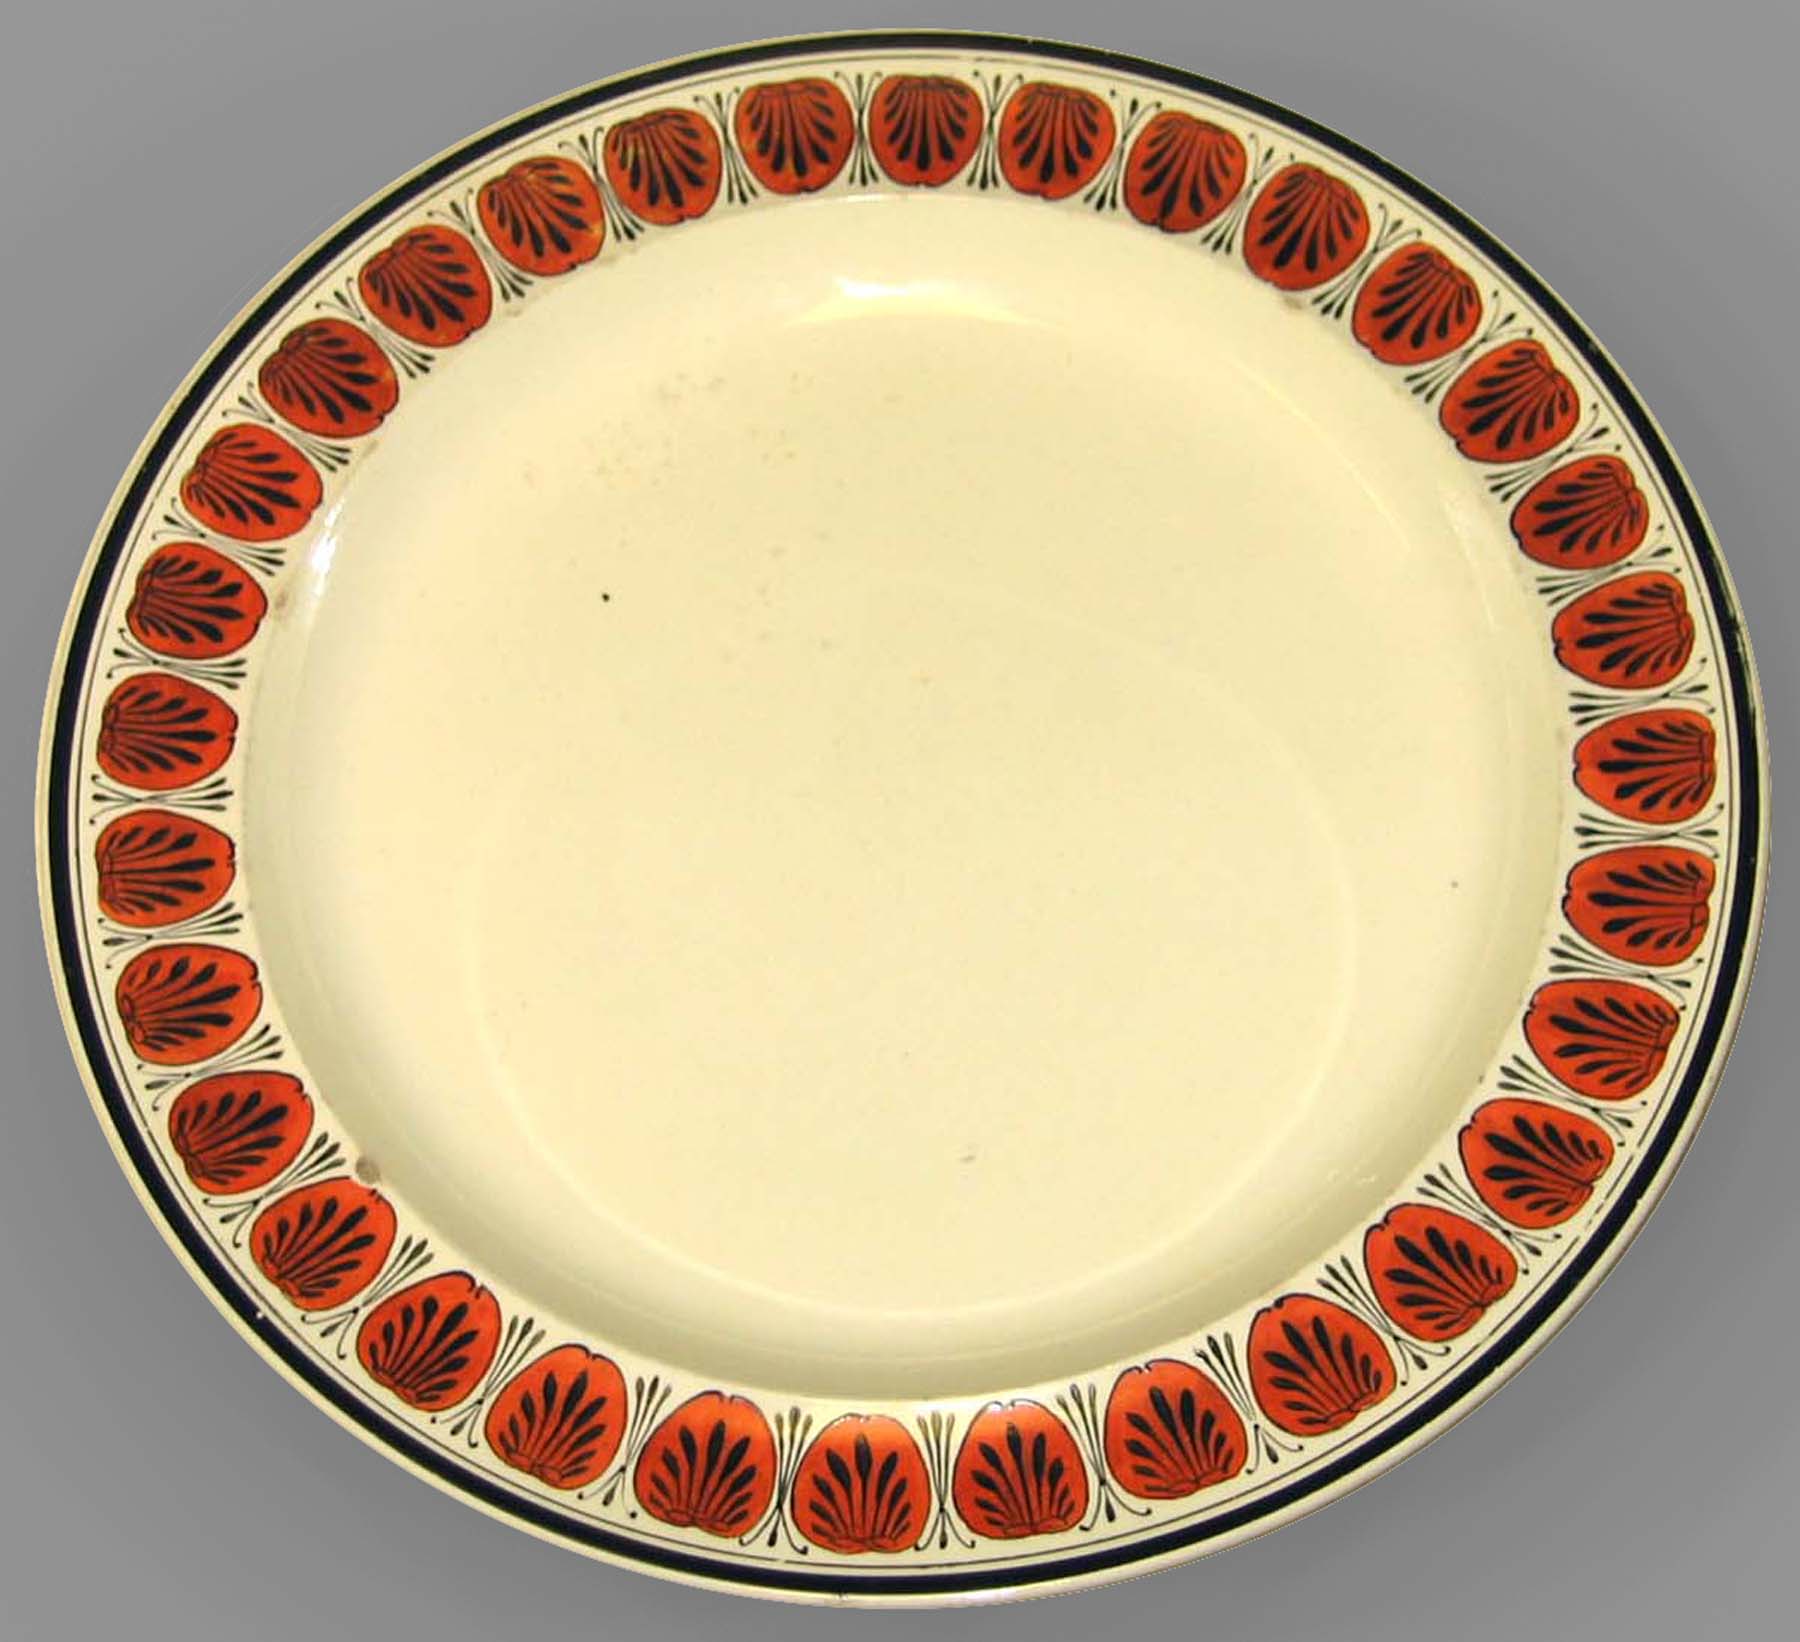 2005.0039 Creamware plate